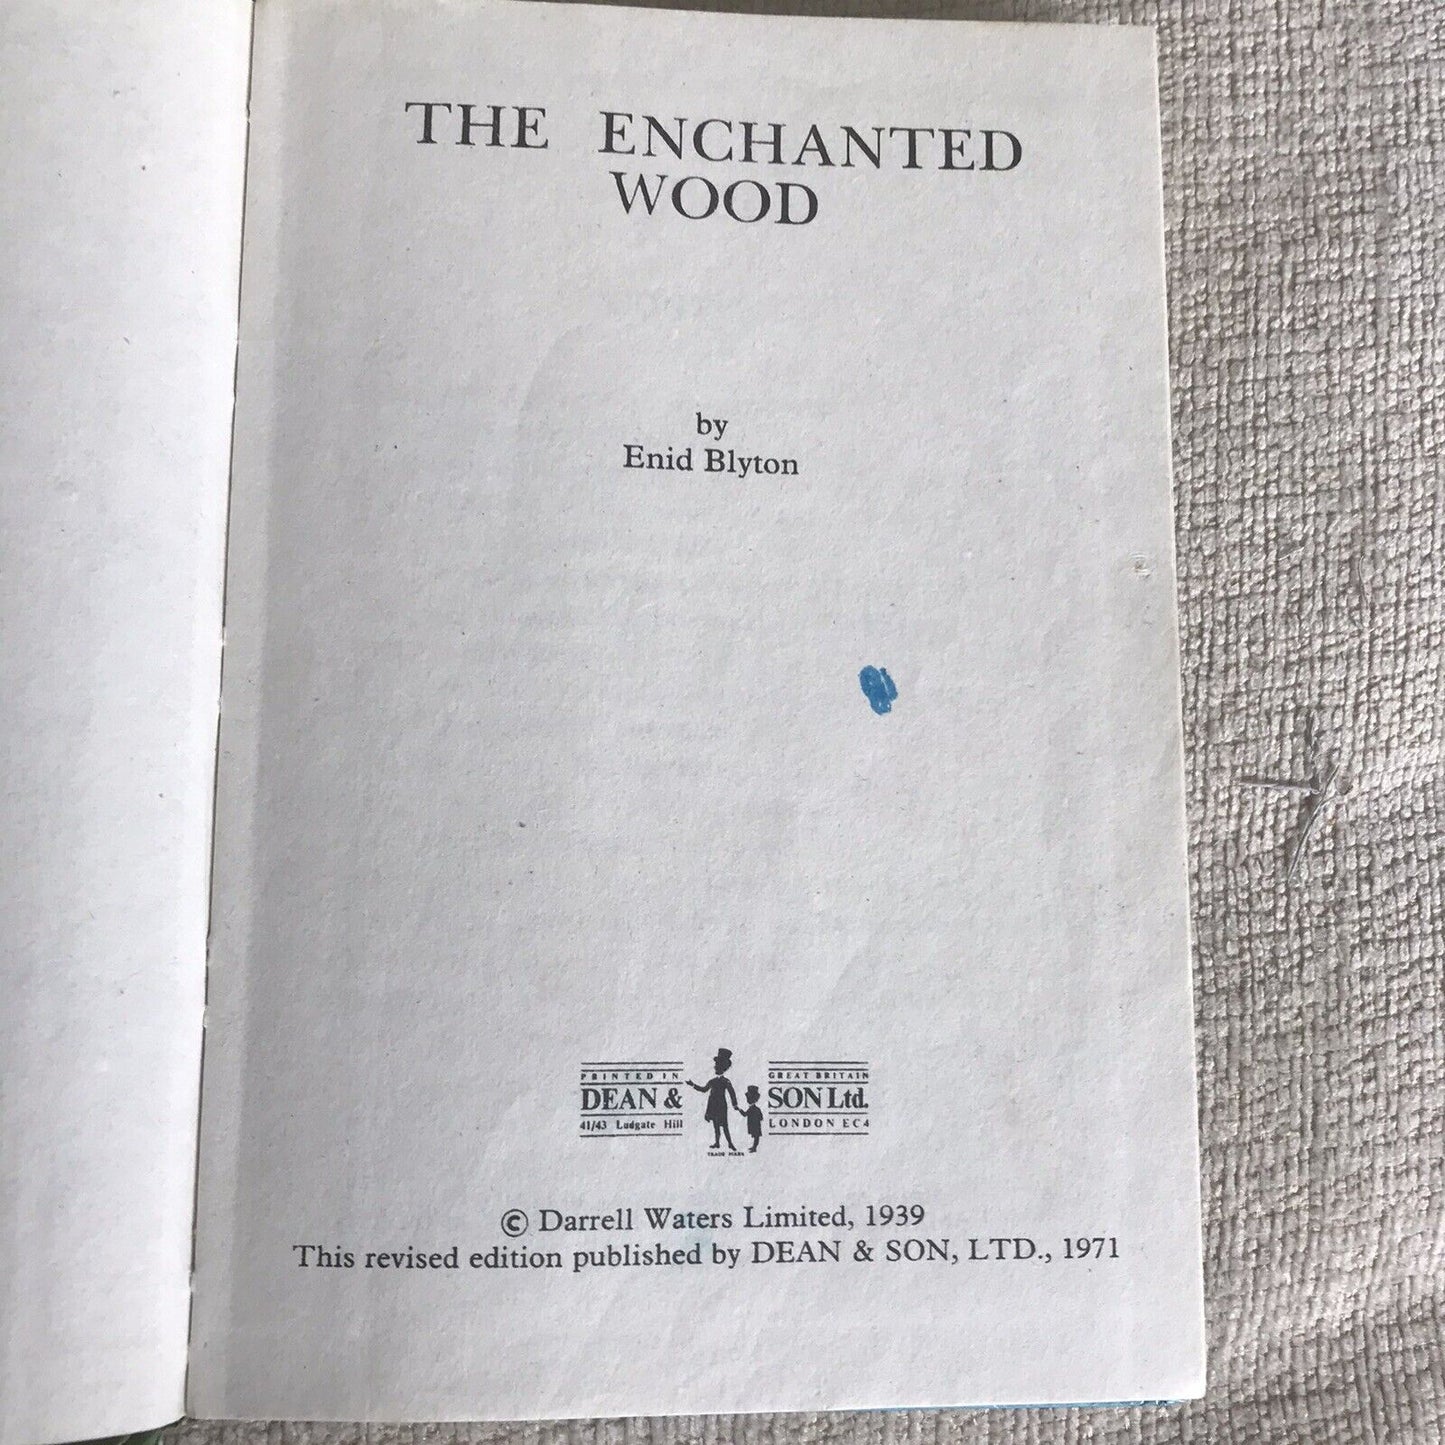 THE ENCHANTED WOOD von Enid Blyton, veröffentlicht von Dean &amp; Son Ltd 1971